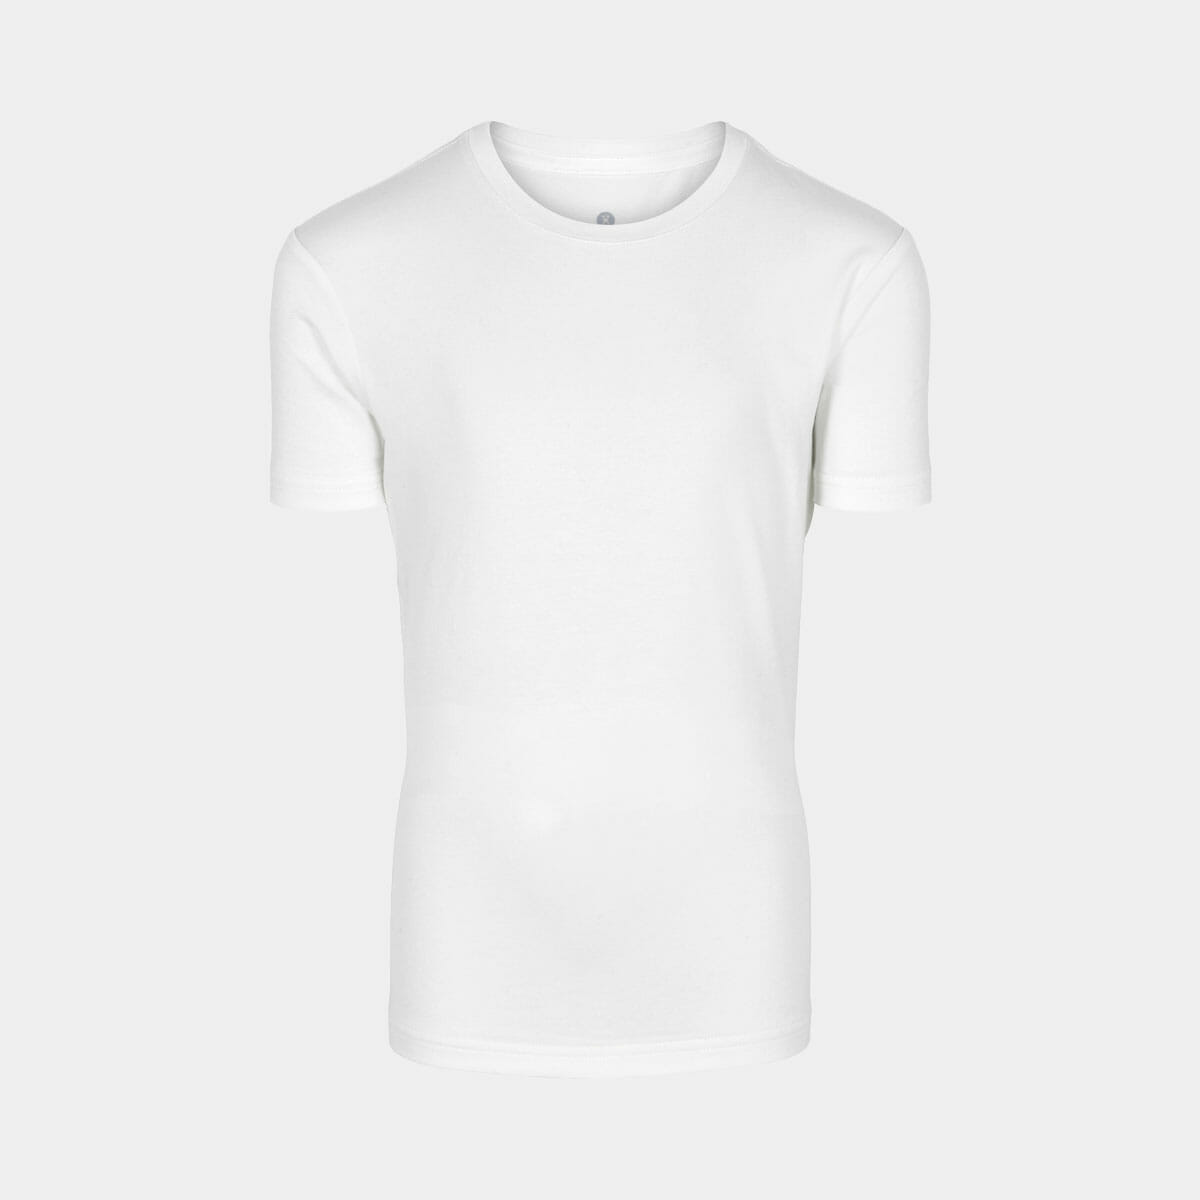 Se Super blød hvid bambus T-shirt til drenge fra JBS of Denmark, 11/12 hos Bambustøj.dk